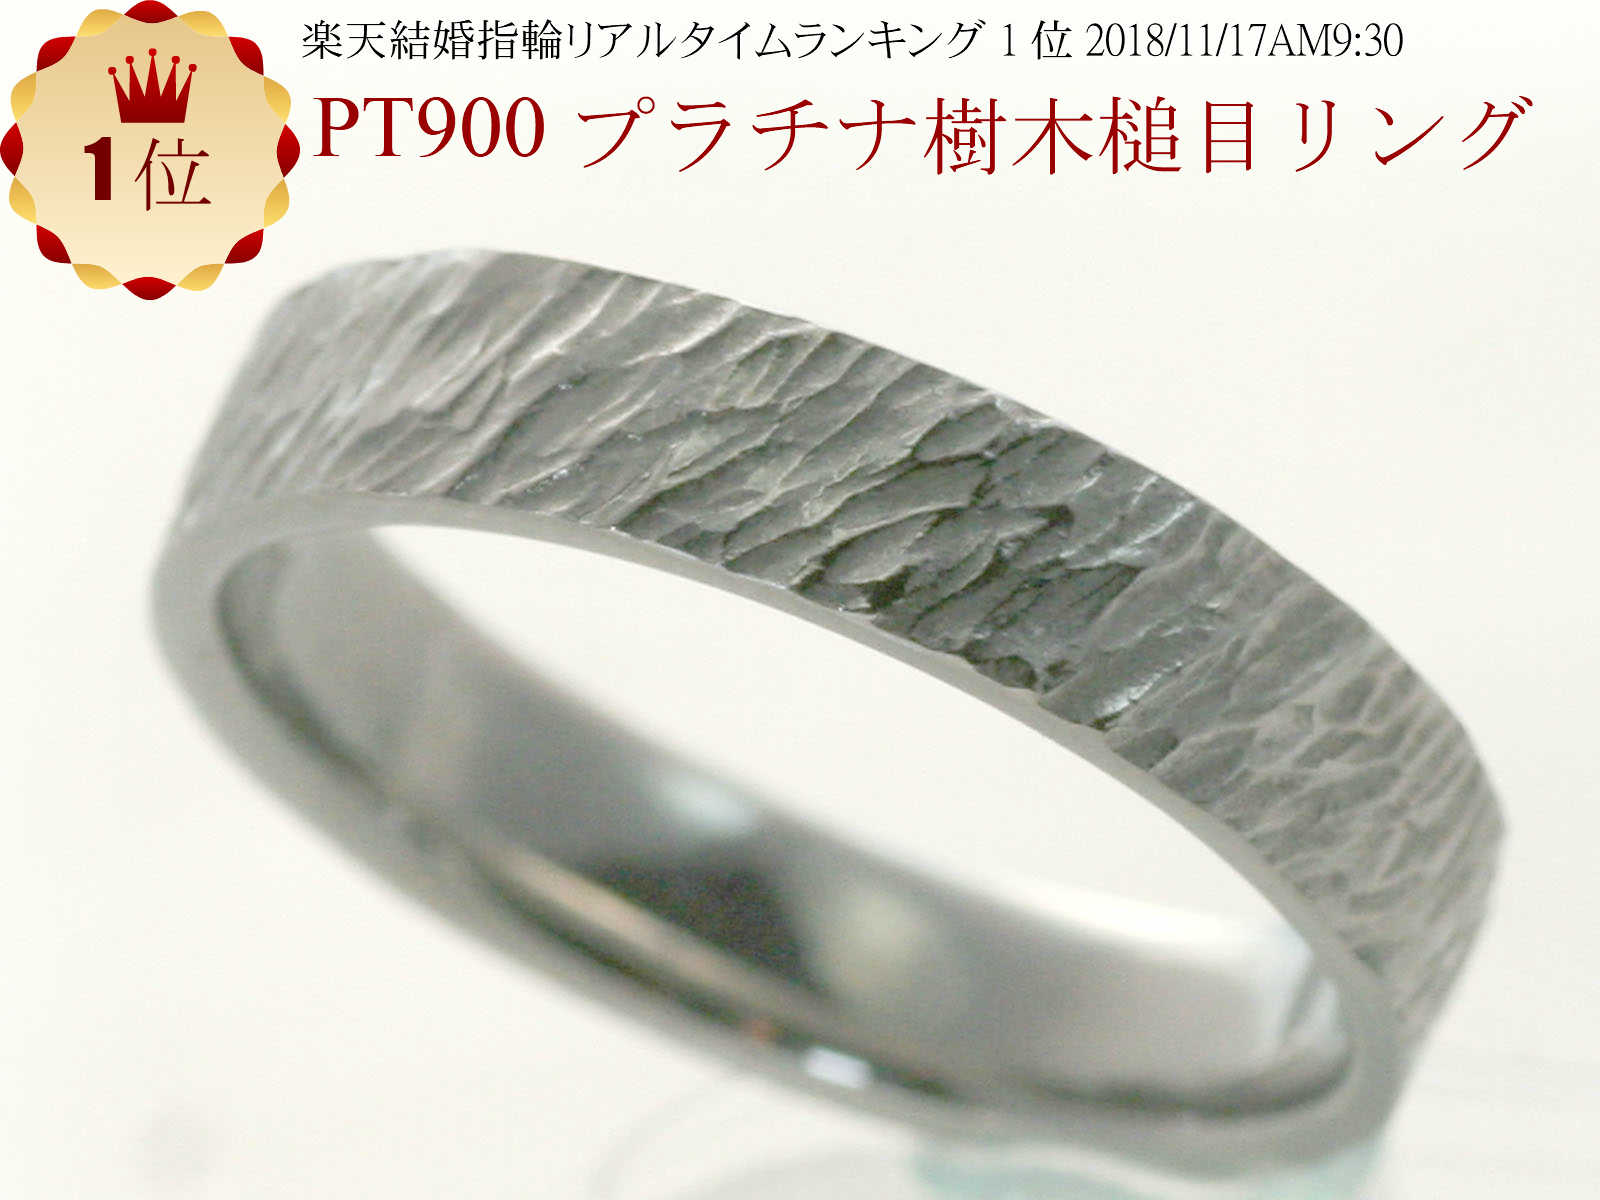 結婚指輪　マリッジリング 樹木 槌目リング プラチナ pt900 手作り ハンドメイド ペアリング プラチナ PT900 リング …